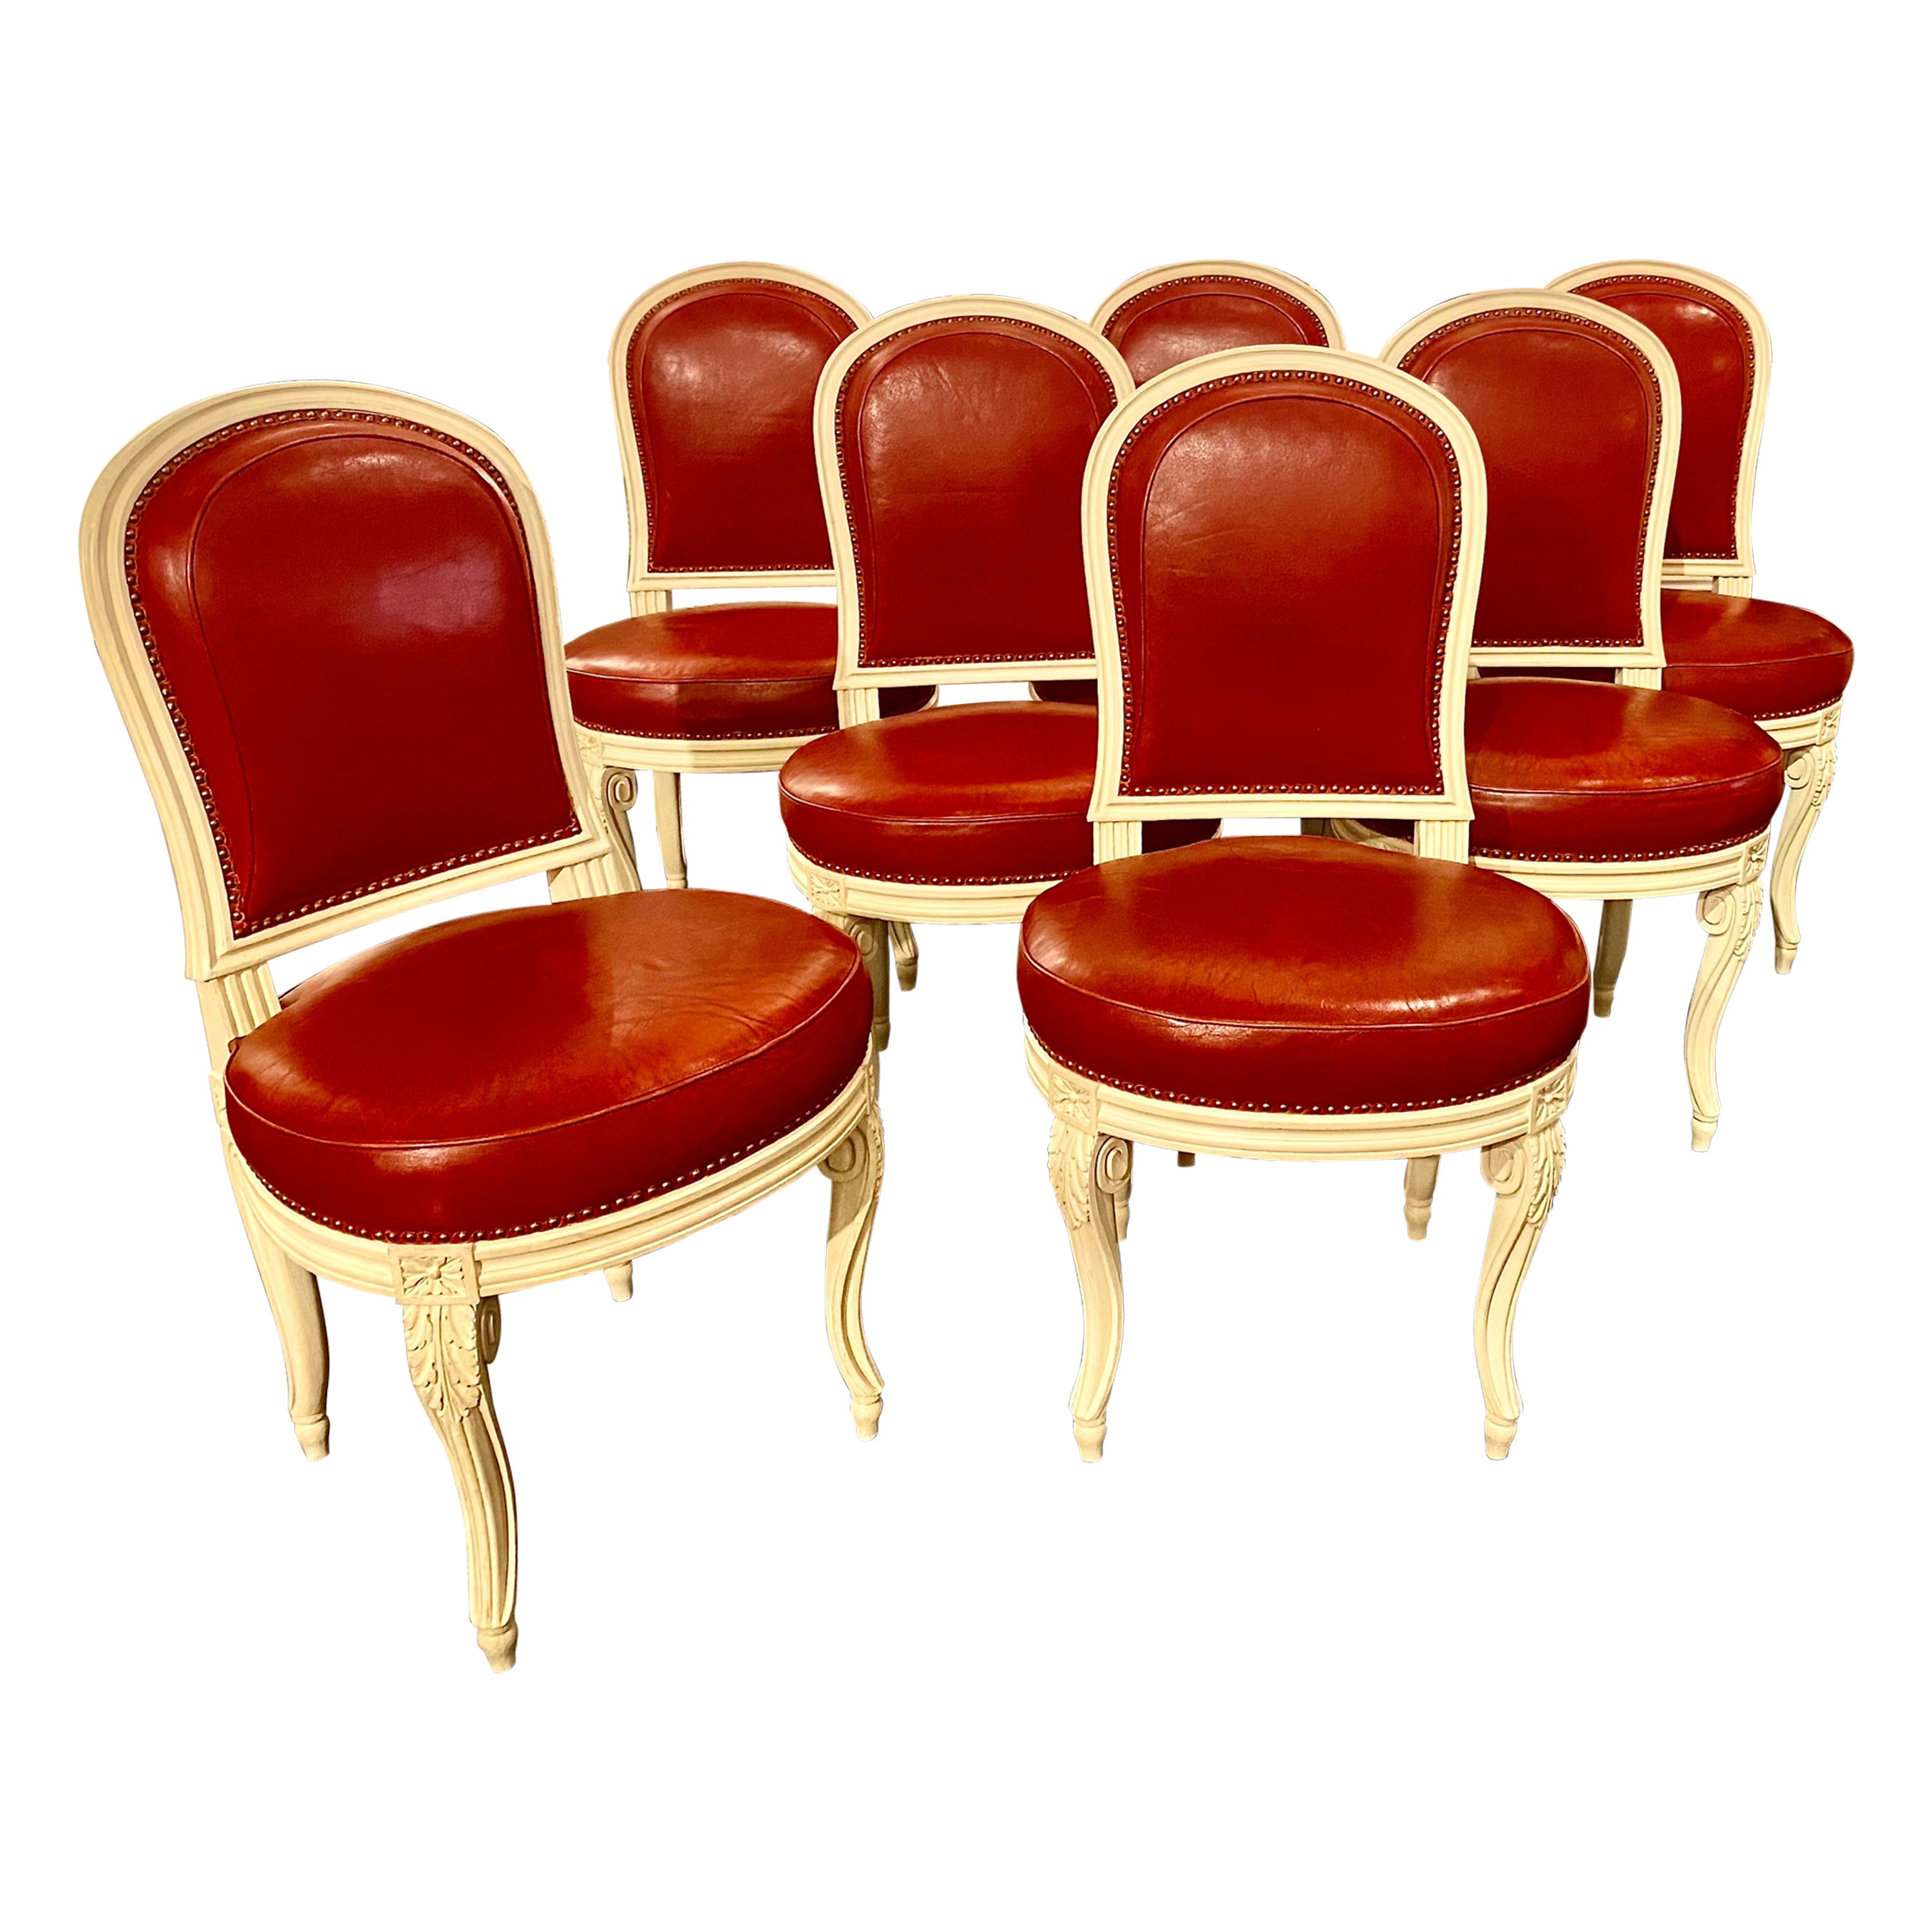 Französische Stühle im Louis-XVI.-Stil nach Jacob, möglicherweise Maison Jansen